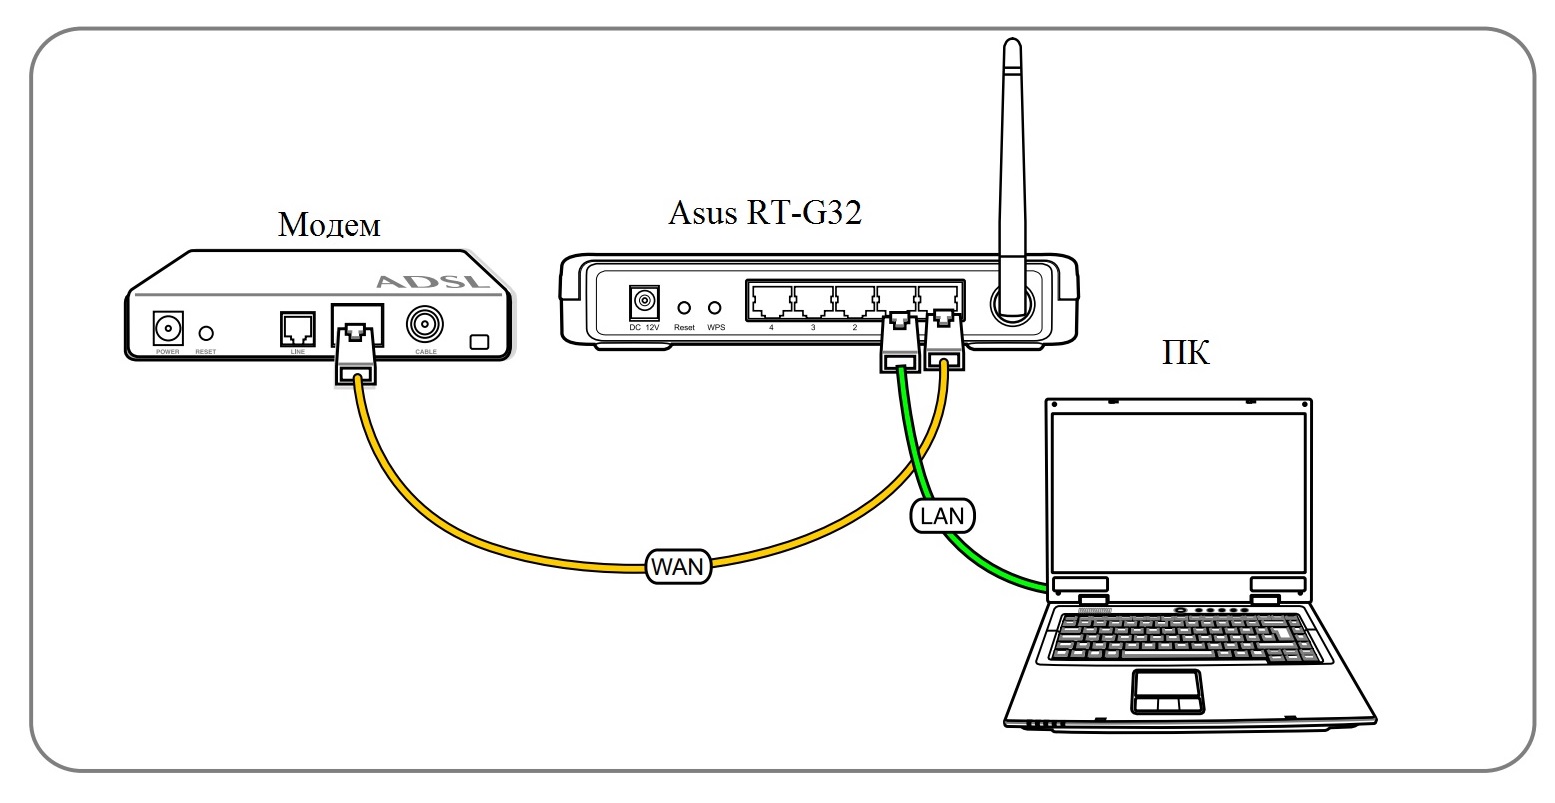 Как можно подключить кабель. Схема подключения роутер роутер компьютер. Схема подключения 4g модема к роутеру. Как подключать кабели модема и роутера. Схема подключения роутера к ПК через кабель.